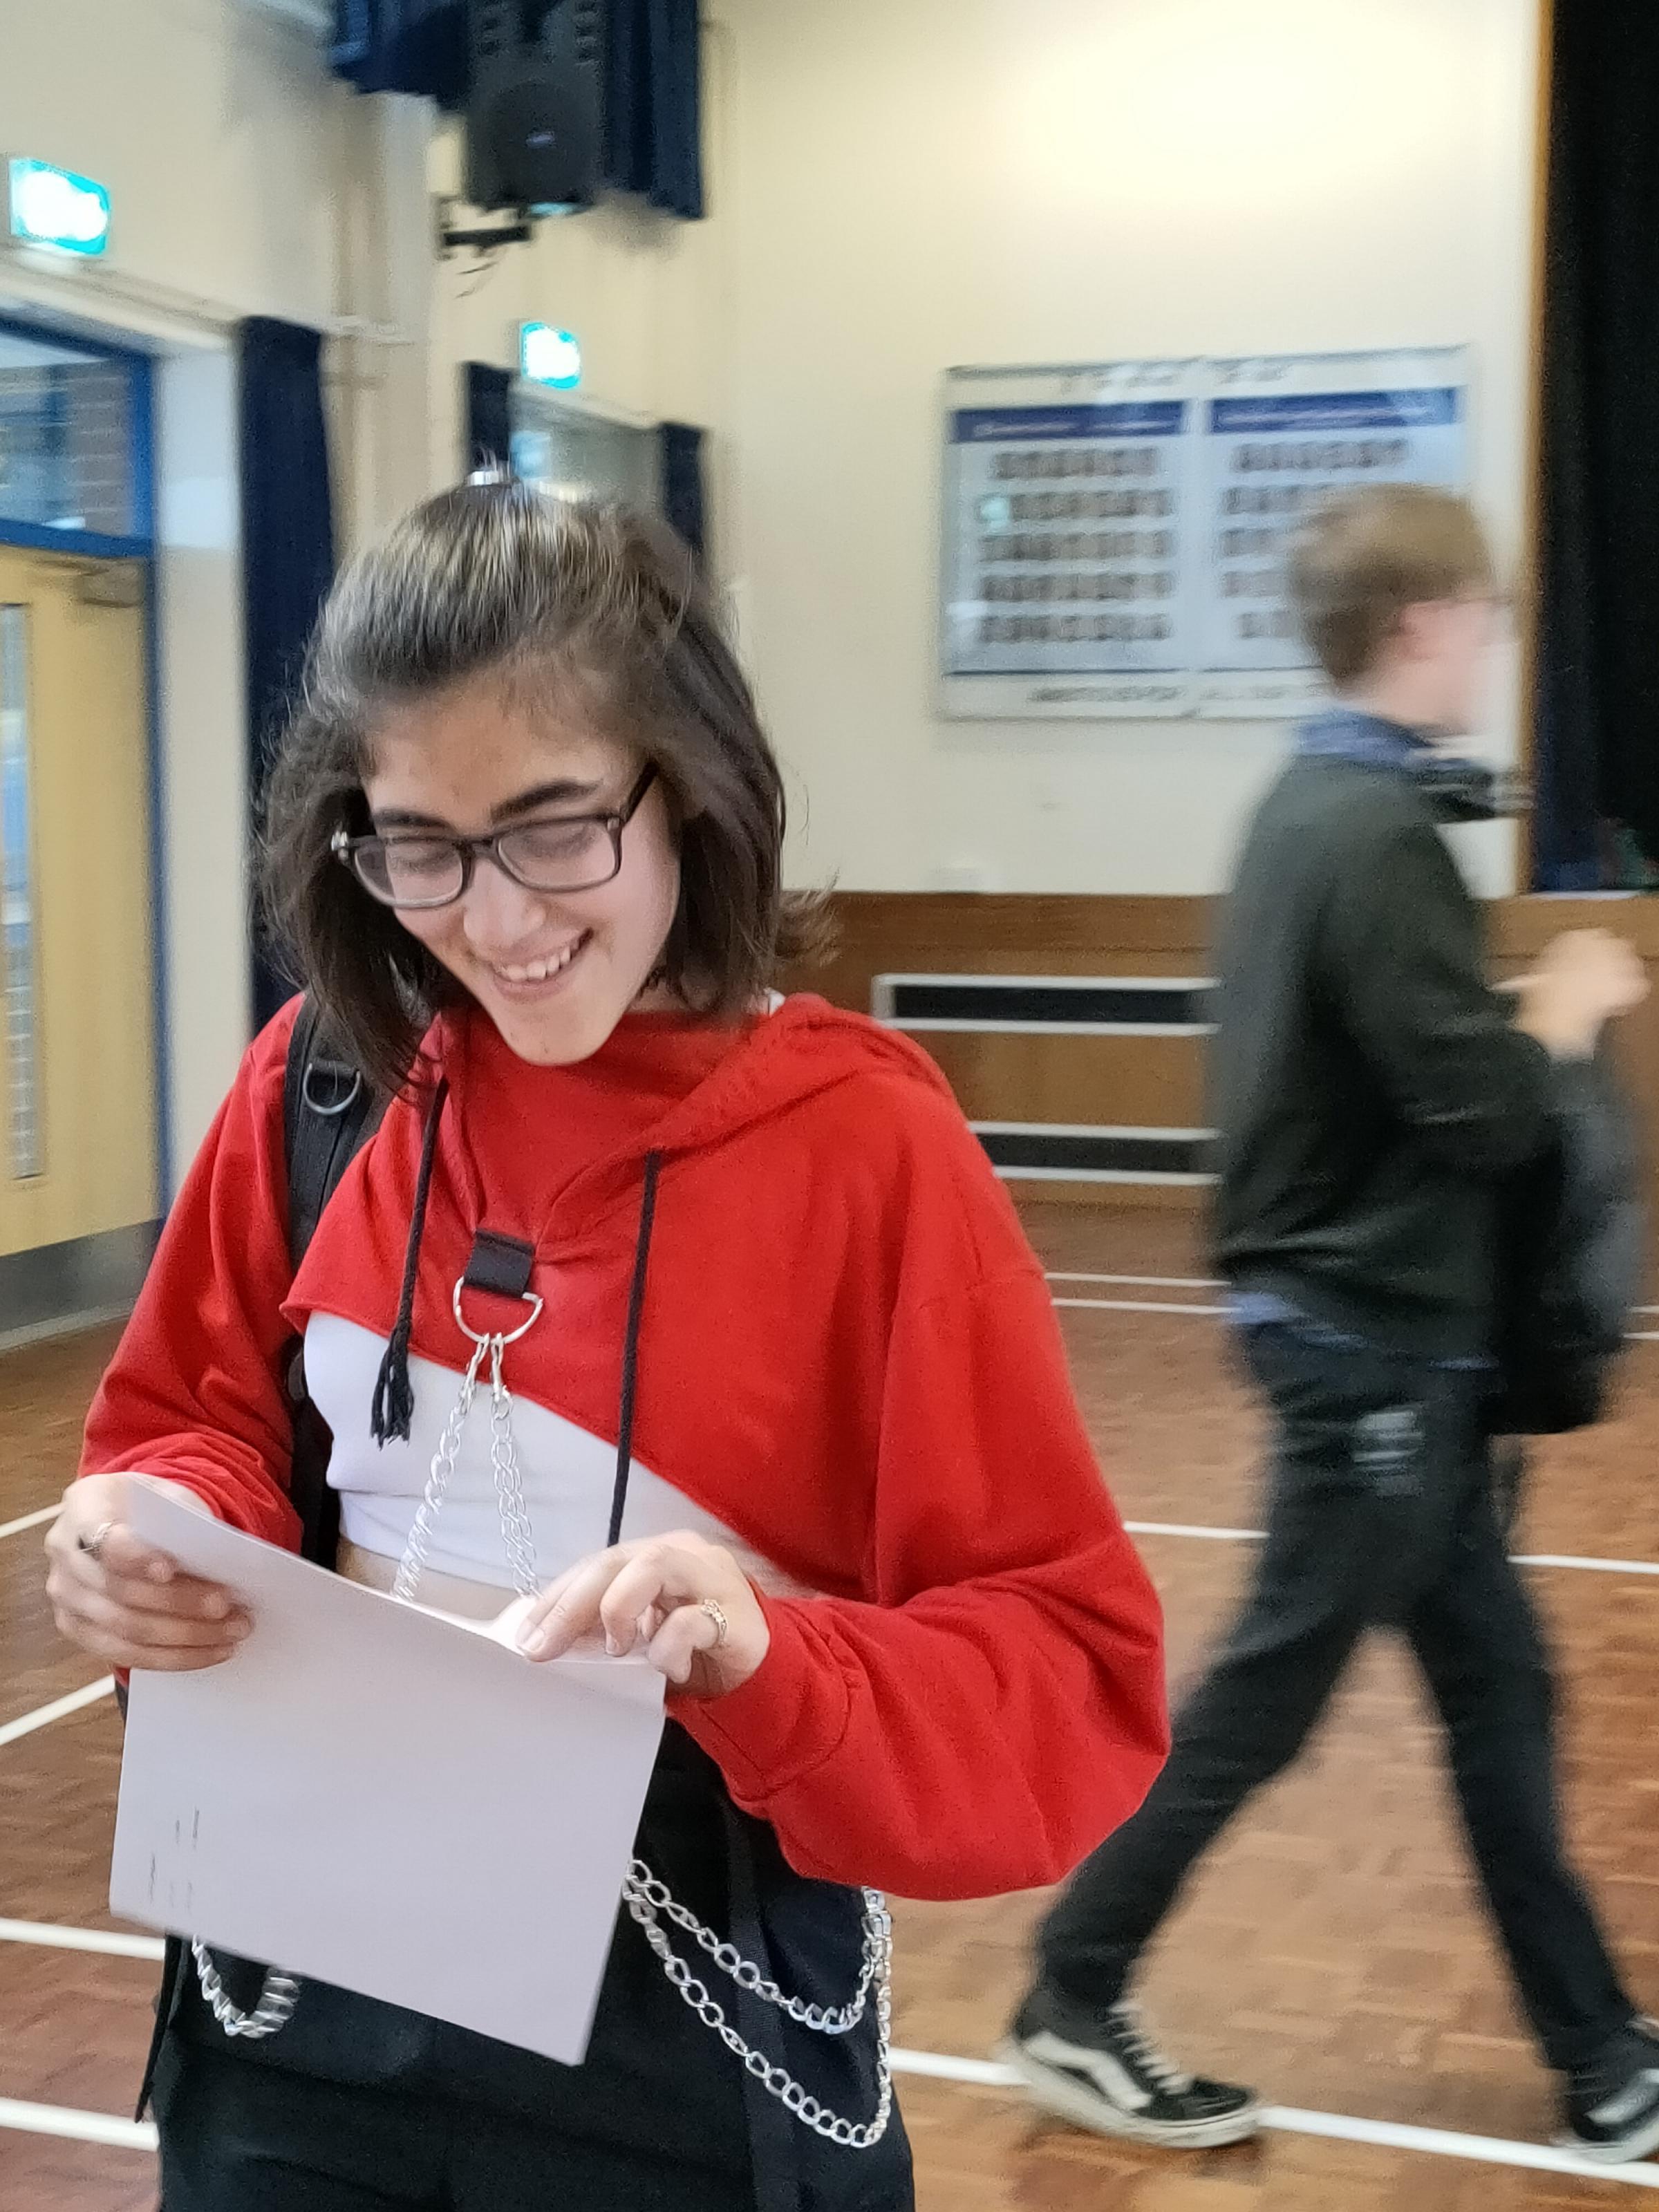 La studentessa della scuola Twinham è stata accettata a Oxford dopo essere arrivata dall’Italia